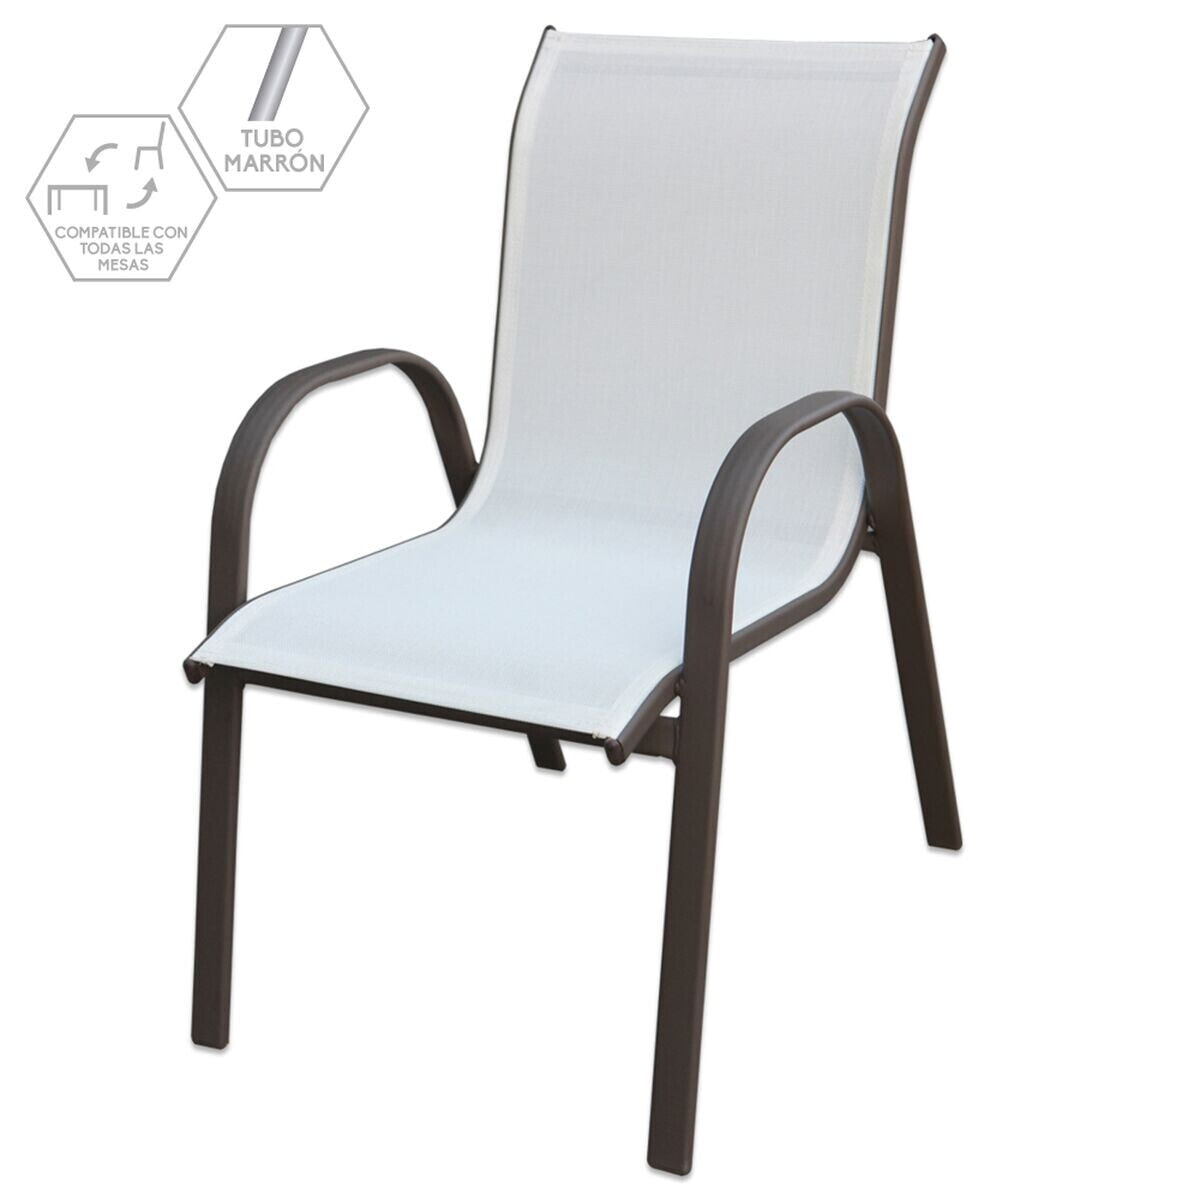 Garden chair Clasic 56 x 68 x 93 cm Iron